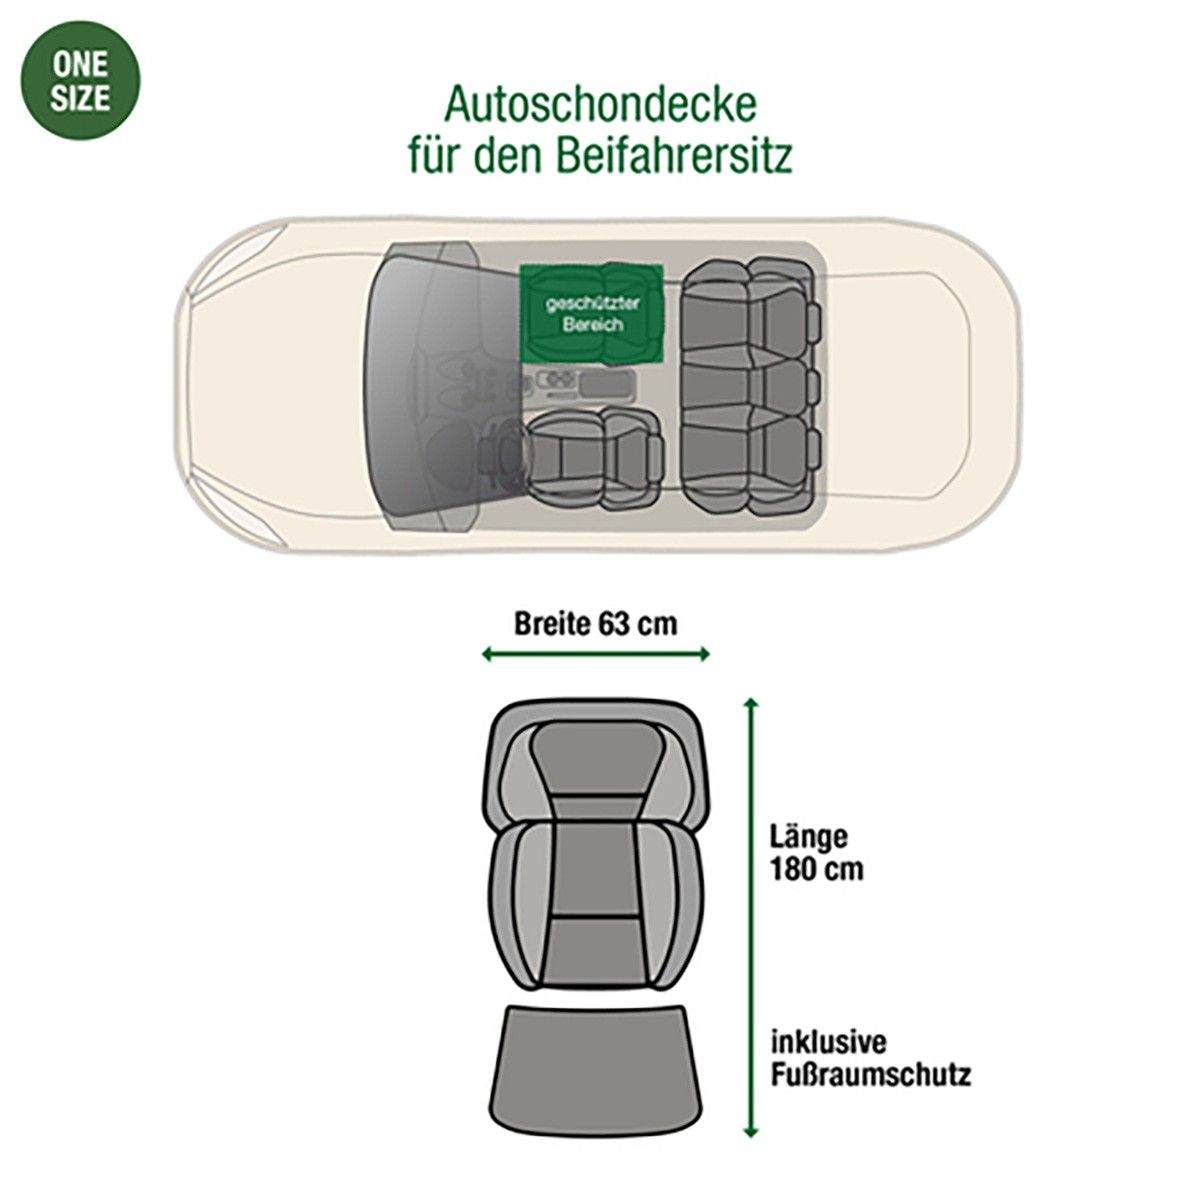 Beifahrersitz Autodecke braun one-size | Doctor Bark